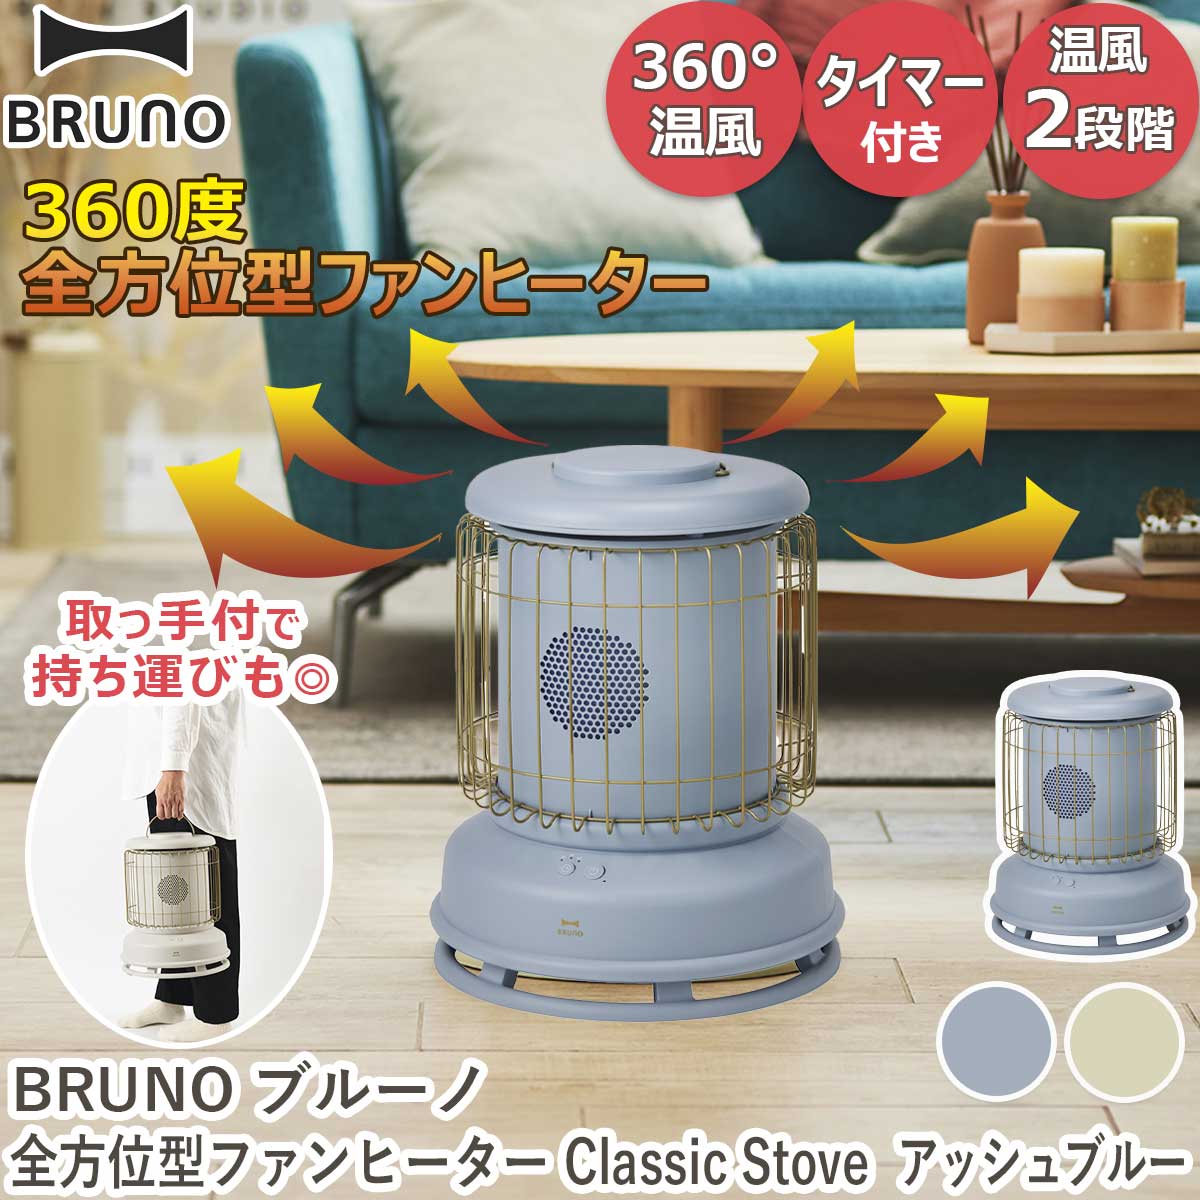 【新品】BRUNO 全方位型ファンヒーター Classic Stove ブルー